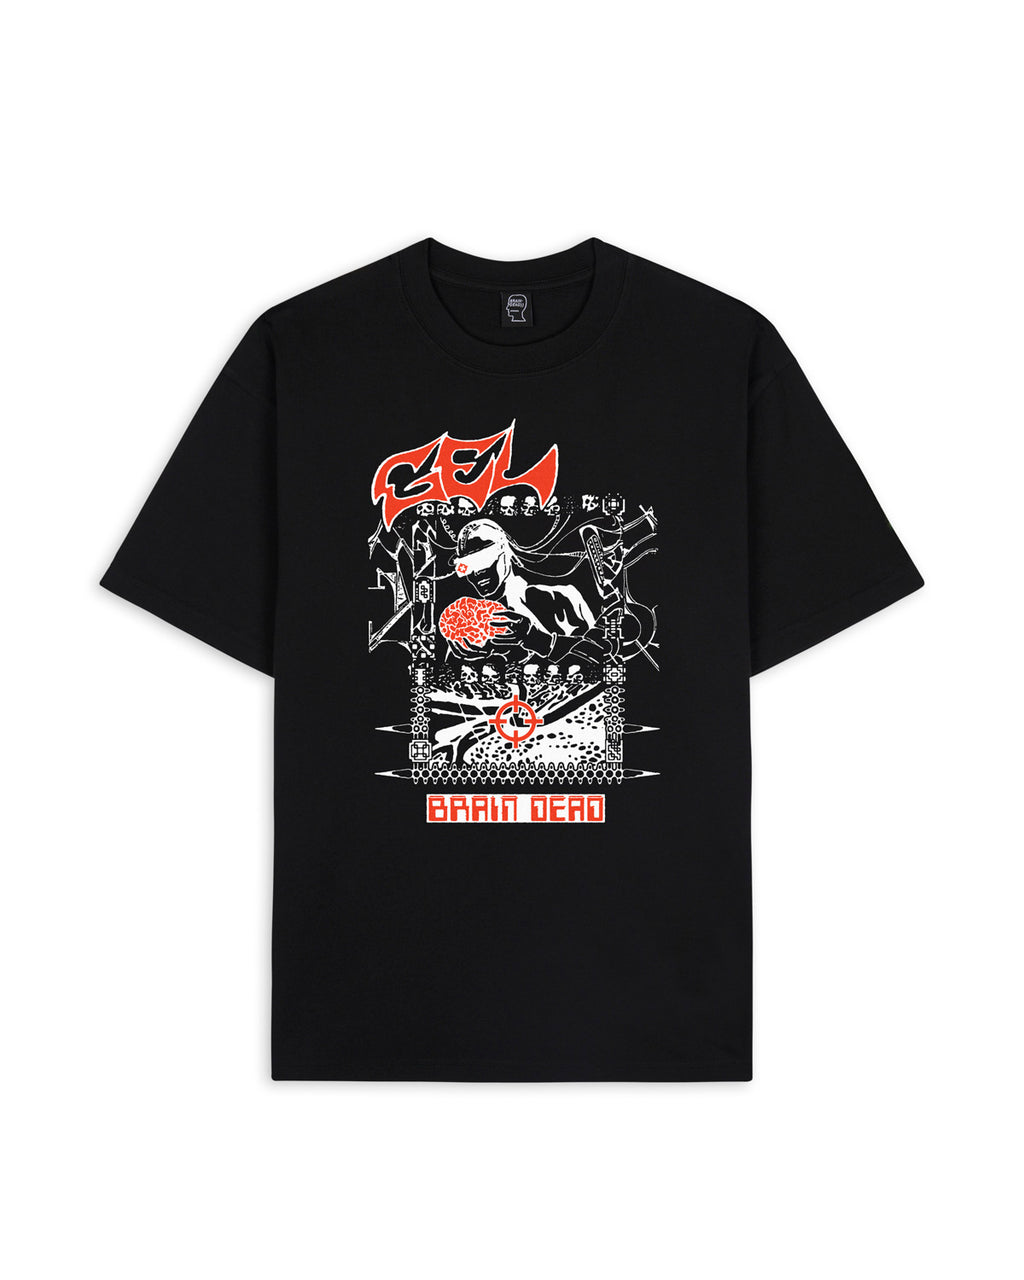 Brain Dead x Gel Sound & Fury T-shirt - Black